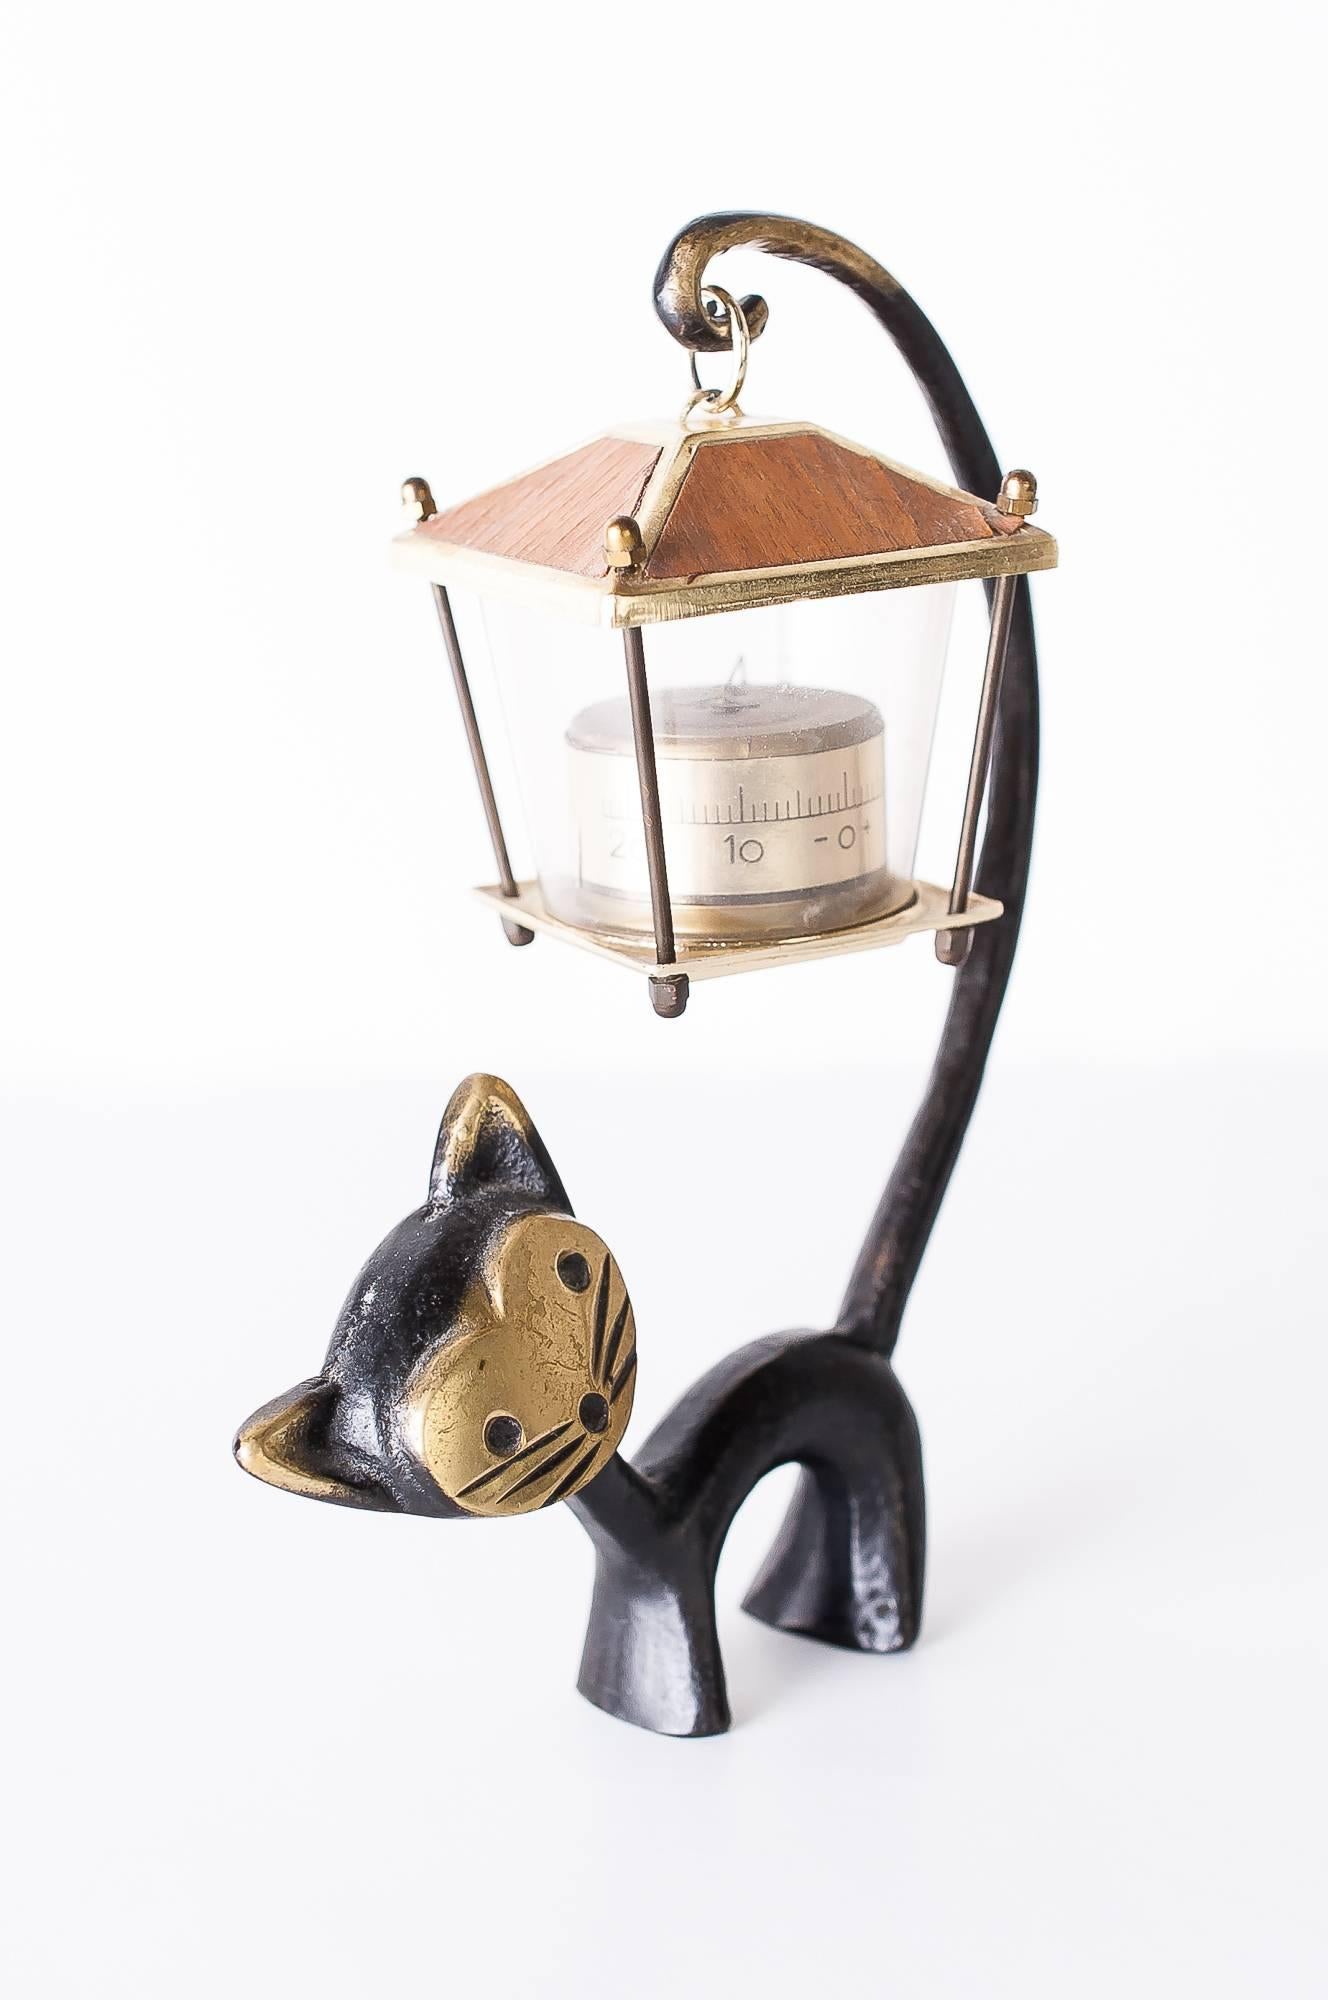 Walter Bosse Katzenfigur mit Thermometer, 1950er Jahre
Österreichisches Tischthermometer, Katzenfigur und ein Thermometer in Form einer Laterne.
Entworfen von Walter Bosse, ausgeführt von Hertha Baller Austria in den 1950er Jahren.
Ursprünglicher